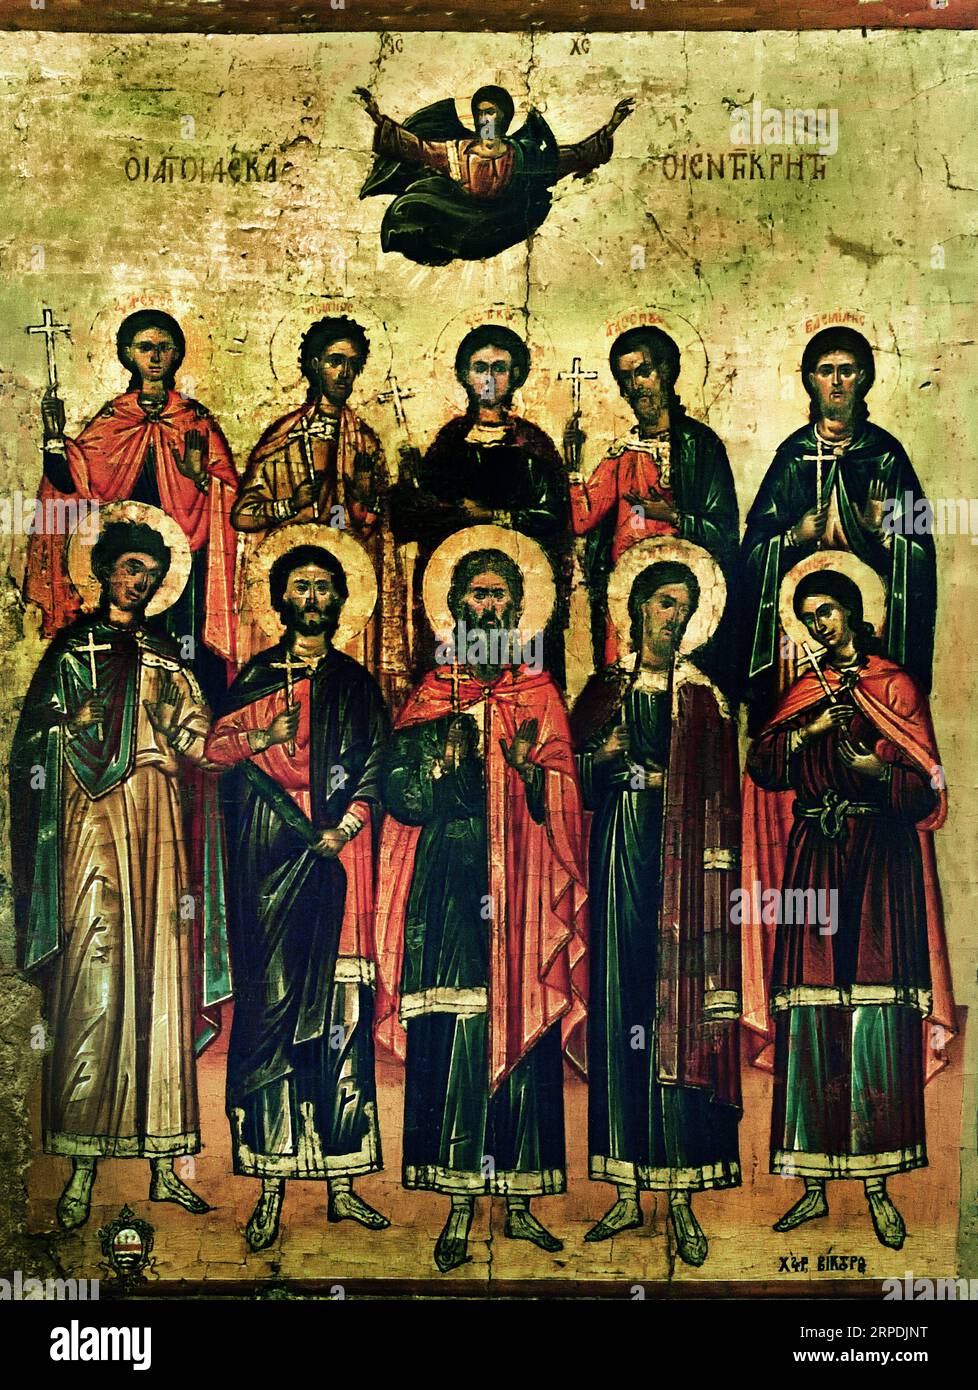 Icône des Saints par le peintre Viktor mi-17e siècle Athènes Grèce Musée byzantin Église orthodoxe grecque ( icône ) Banque D'Images